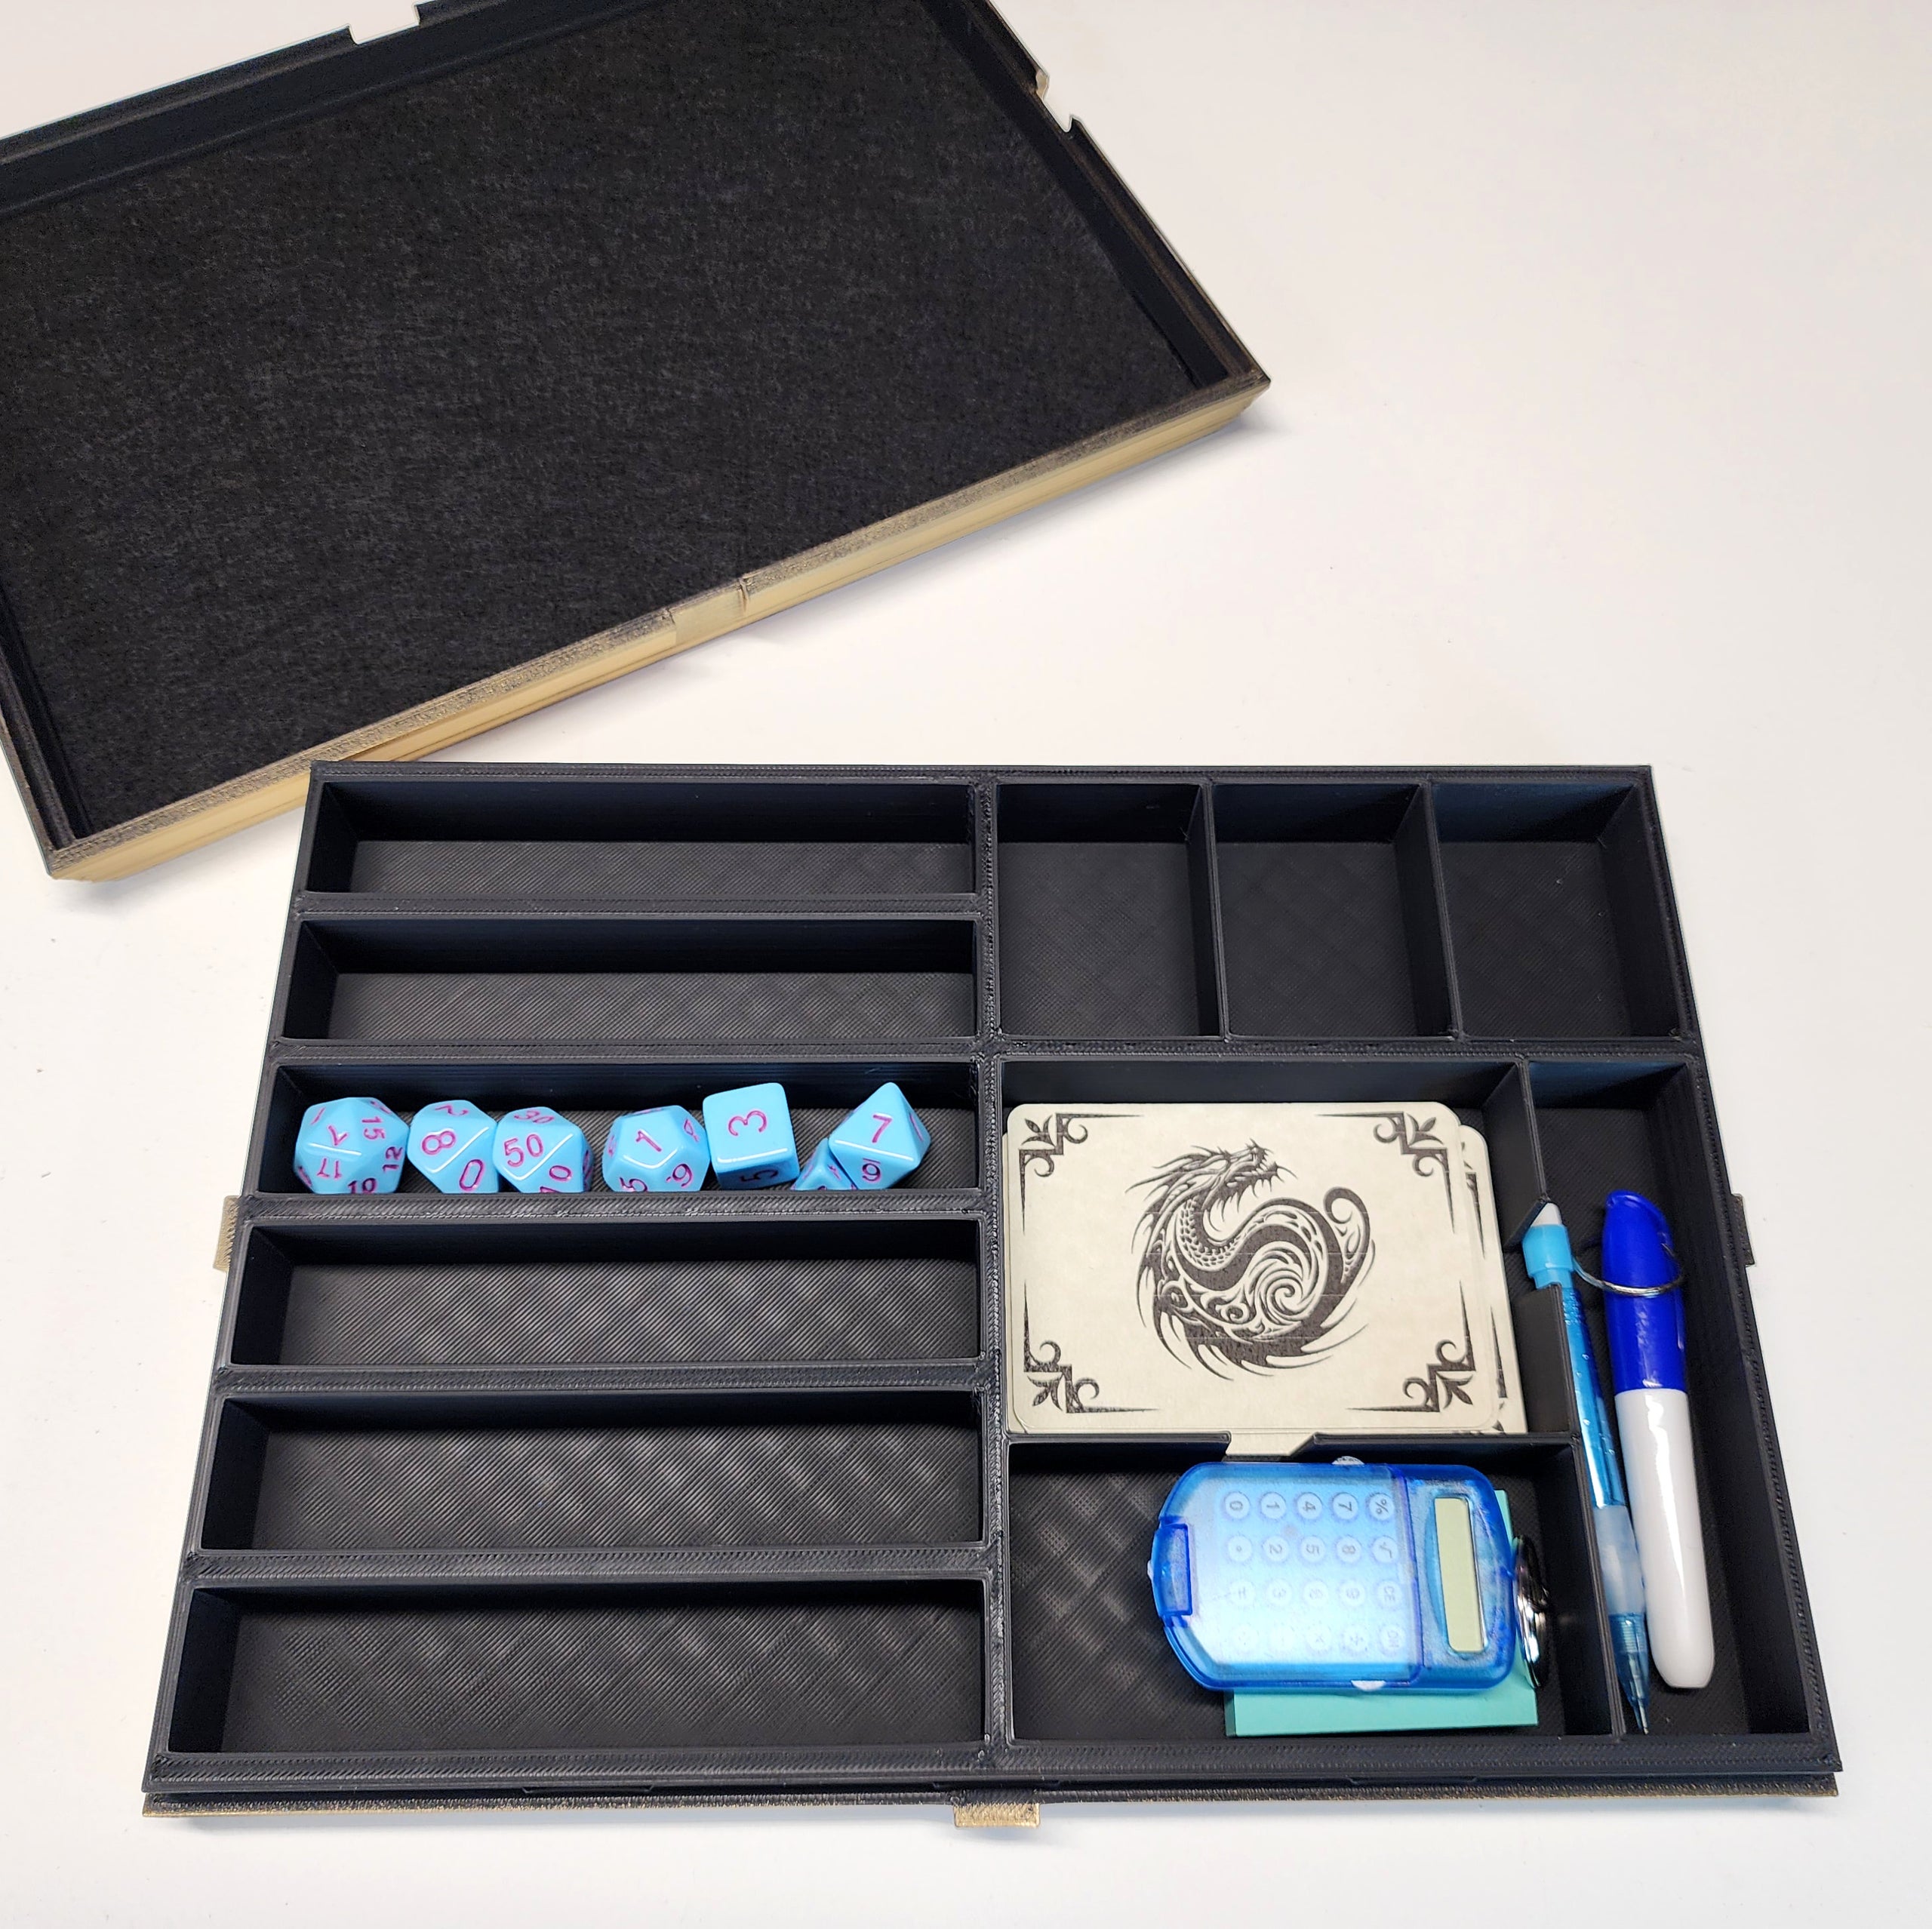 Player's Companion - TTRPG dice organizer, mini storage, dice tray